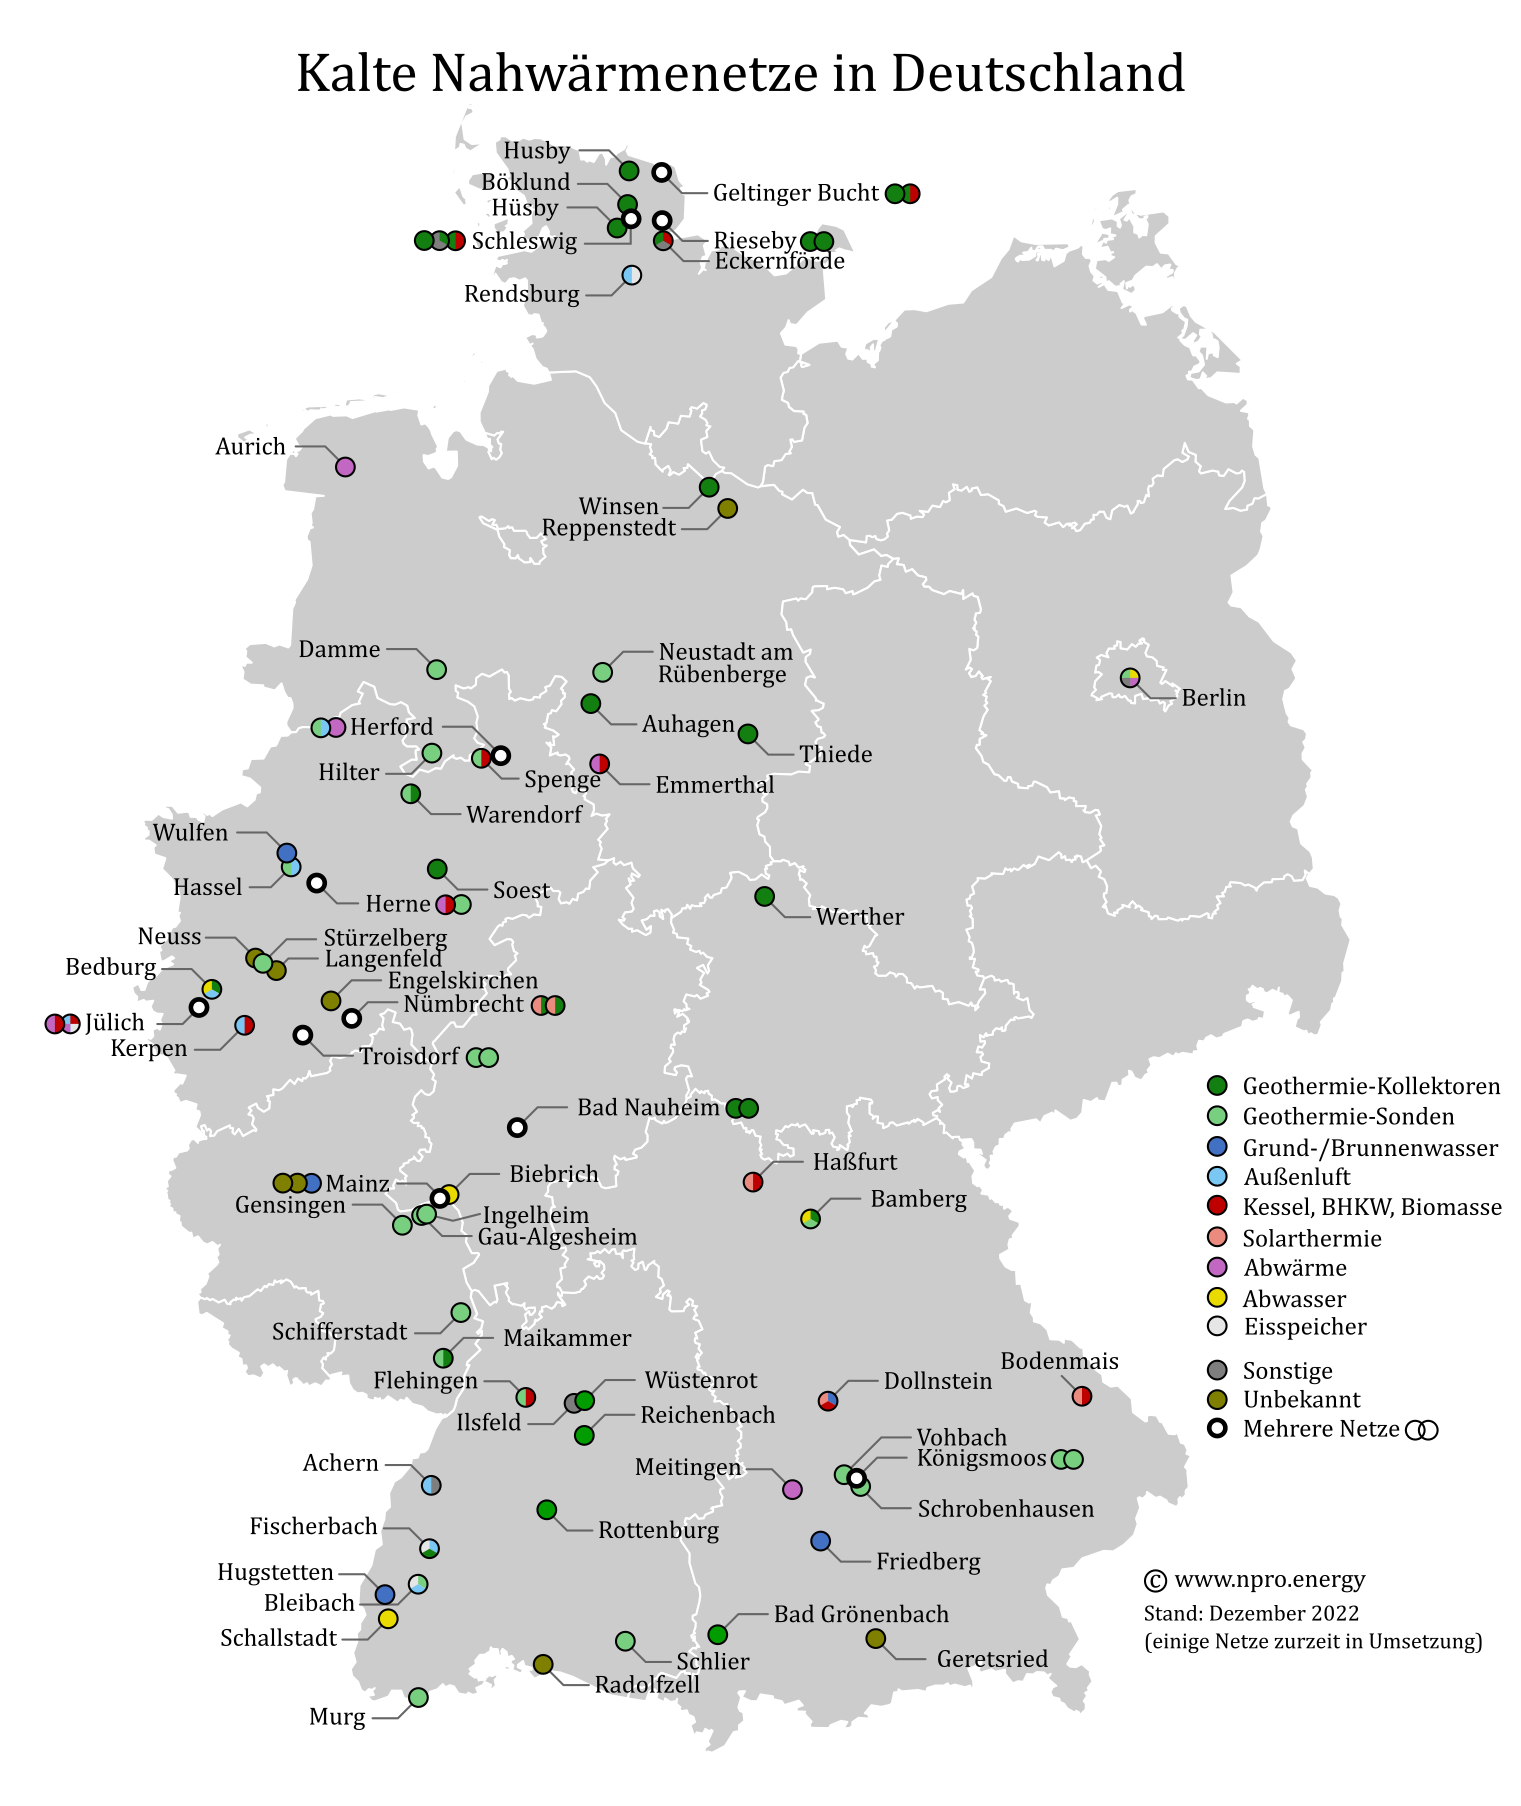 Karte mit kalter Nahwärme/Anergienetzen in Deutschland